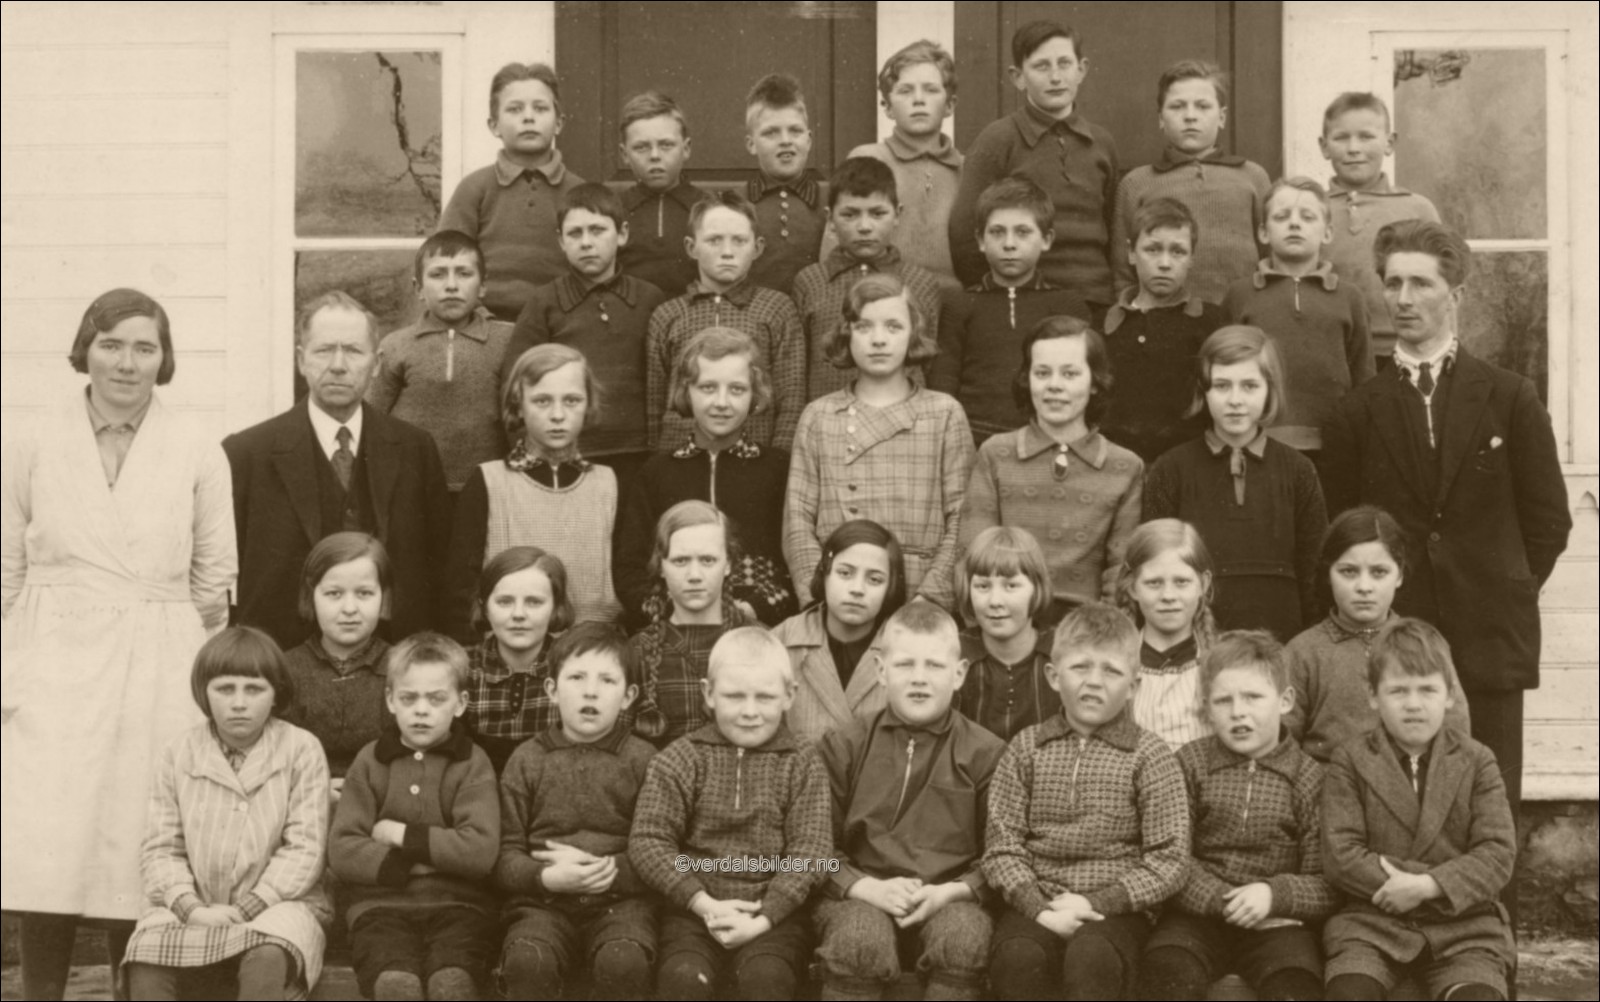 Elever fra skoleåret 1932/33. Utlånt av Einar Stene. Hjelp til navnsetting, Margit Selvik, Bernhard Granheim og Tormod Hofstad.